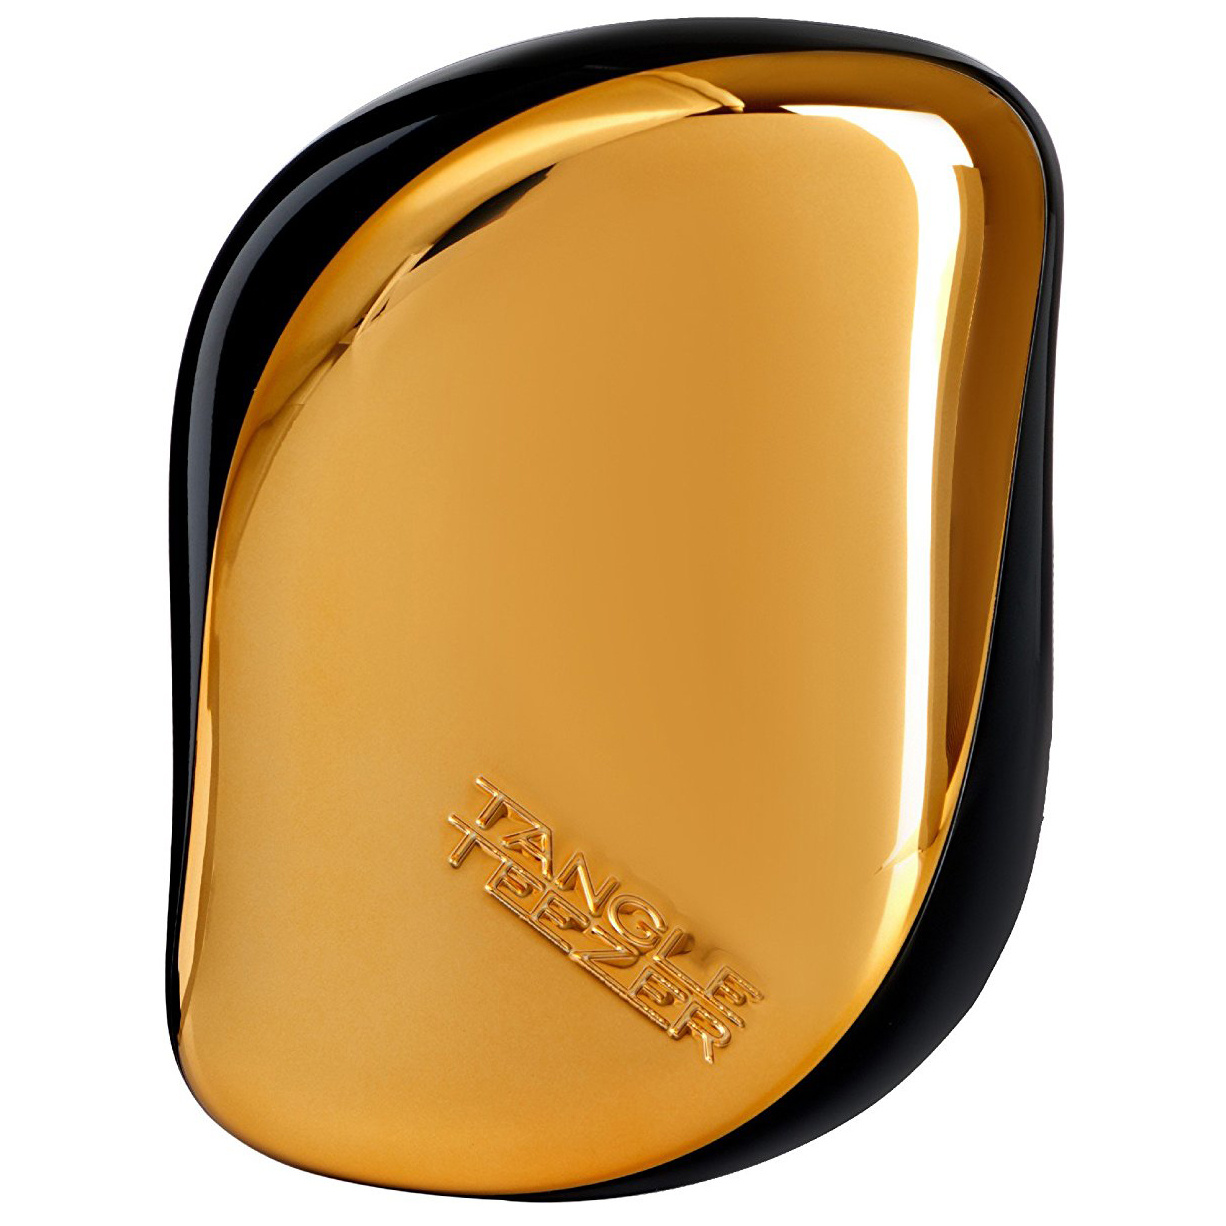 Расческа Tangle Teezer Compact Styler Bronze Chrome chrome